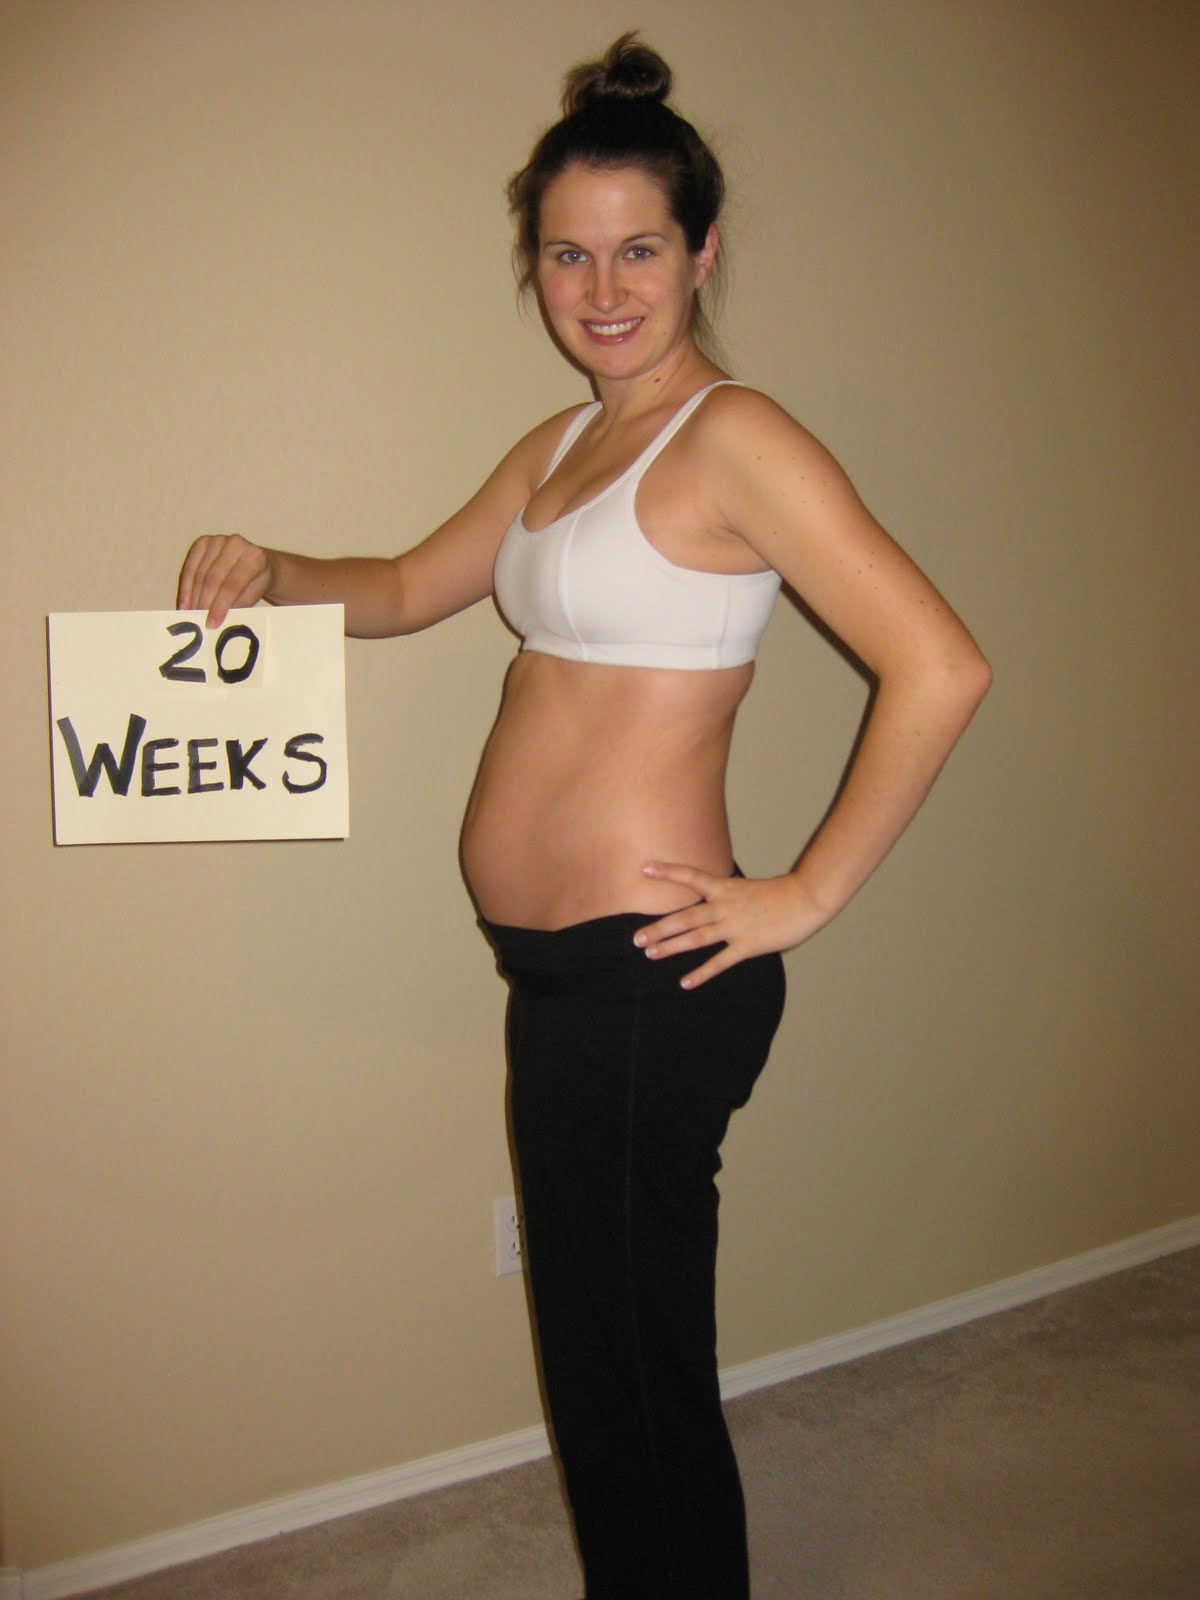 Живот 18 недель форум. Живот на 20 неделе беременности. Животик на 20 неделе беременности. Беременный живот 20 недель. Живот на 19 неделе.